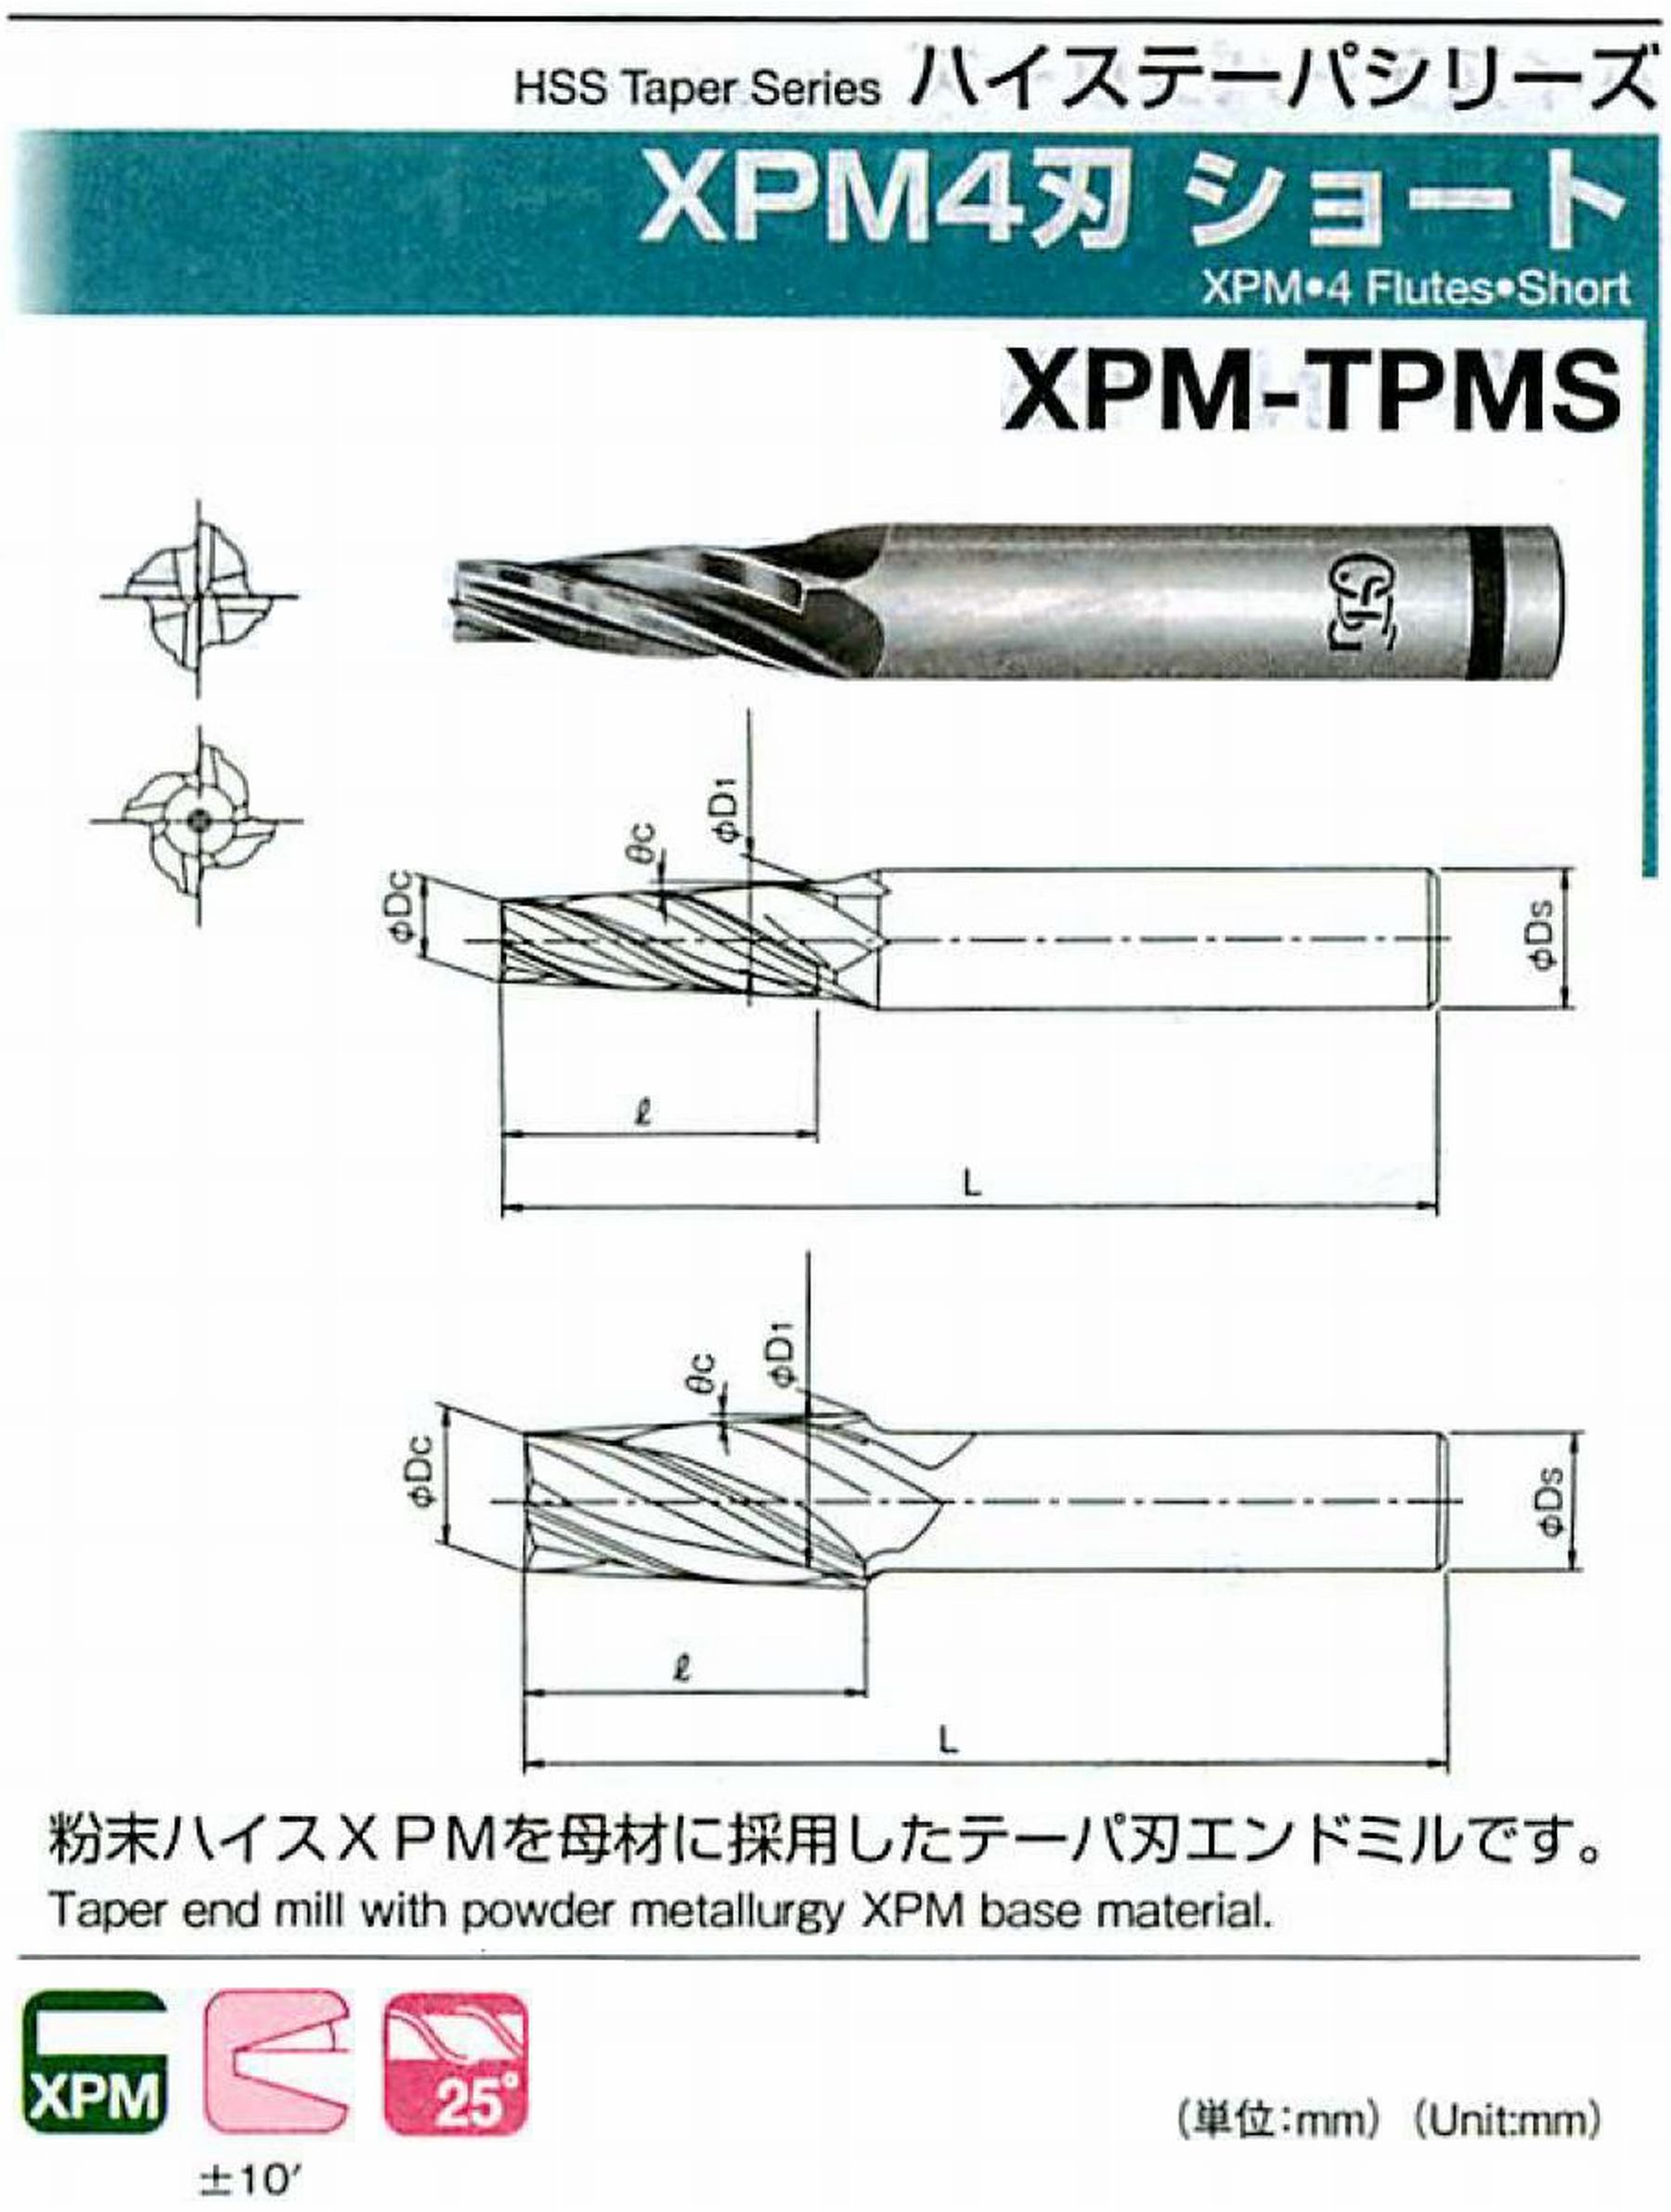 オーエスジー/OSG XPM4刃 ショート XPM-TPMS 外径×刃部テーパ半角3×2.5°全長62 刃長18 シャンク径6mm 大端径4.57